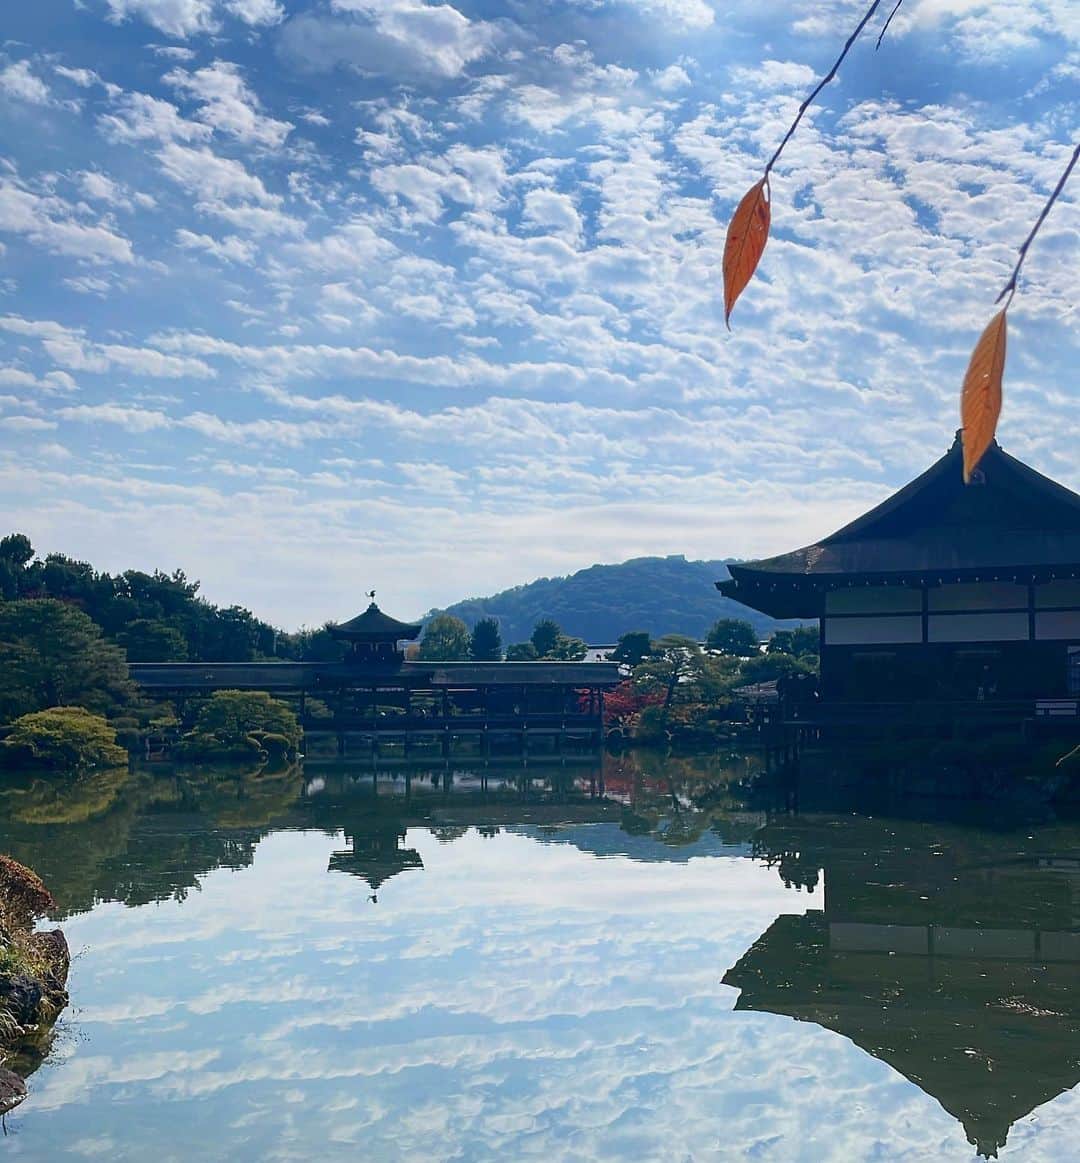 田中美里のインスタグラム：「・ ・ 舞台「たわごと」  京都公演が終わりました！ たくさんのお客様に観ていただけて嬉しかったです。  舞台前は共演者のイズちゃんと近くの平安神宮 までお散歩して紅葉の京都を満喫。 空も美しくて気持ち良かった〜。  次は岡山でお待ちしています。  岡山といえば「あぐり」です。 私が初めてロケで訪れた場所。  他にも、映画「家族の日」でも高梁市に撮影できたなぁ。 大好きな場所。  是非、観に来てくださいね。  ⚪︎岡山公演  岡山芸術創造劇場ハレノワ中劇場 11月26日（日）  ⚪︎東京公演 東京芸術劇場シアターイースト 12月8日から17日まで  #たわごと  #渋川清彦  #田中美里 #谷恭輔  #松岡依都美  #松金よね子 #渡辺いっけい #演出 #桑原裕子  #穂の国とよはし芸術劇場plat主ホール  #東京芸術劇場シアターイースト #ロームシアター京都サウスホール  #岡山芸術創造劇場ハレノワ中劇場  #平安神宮 #京都」